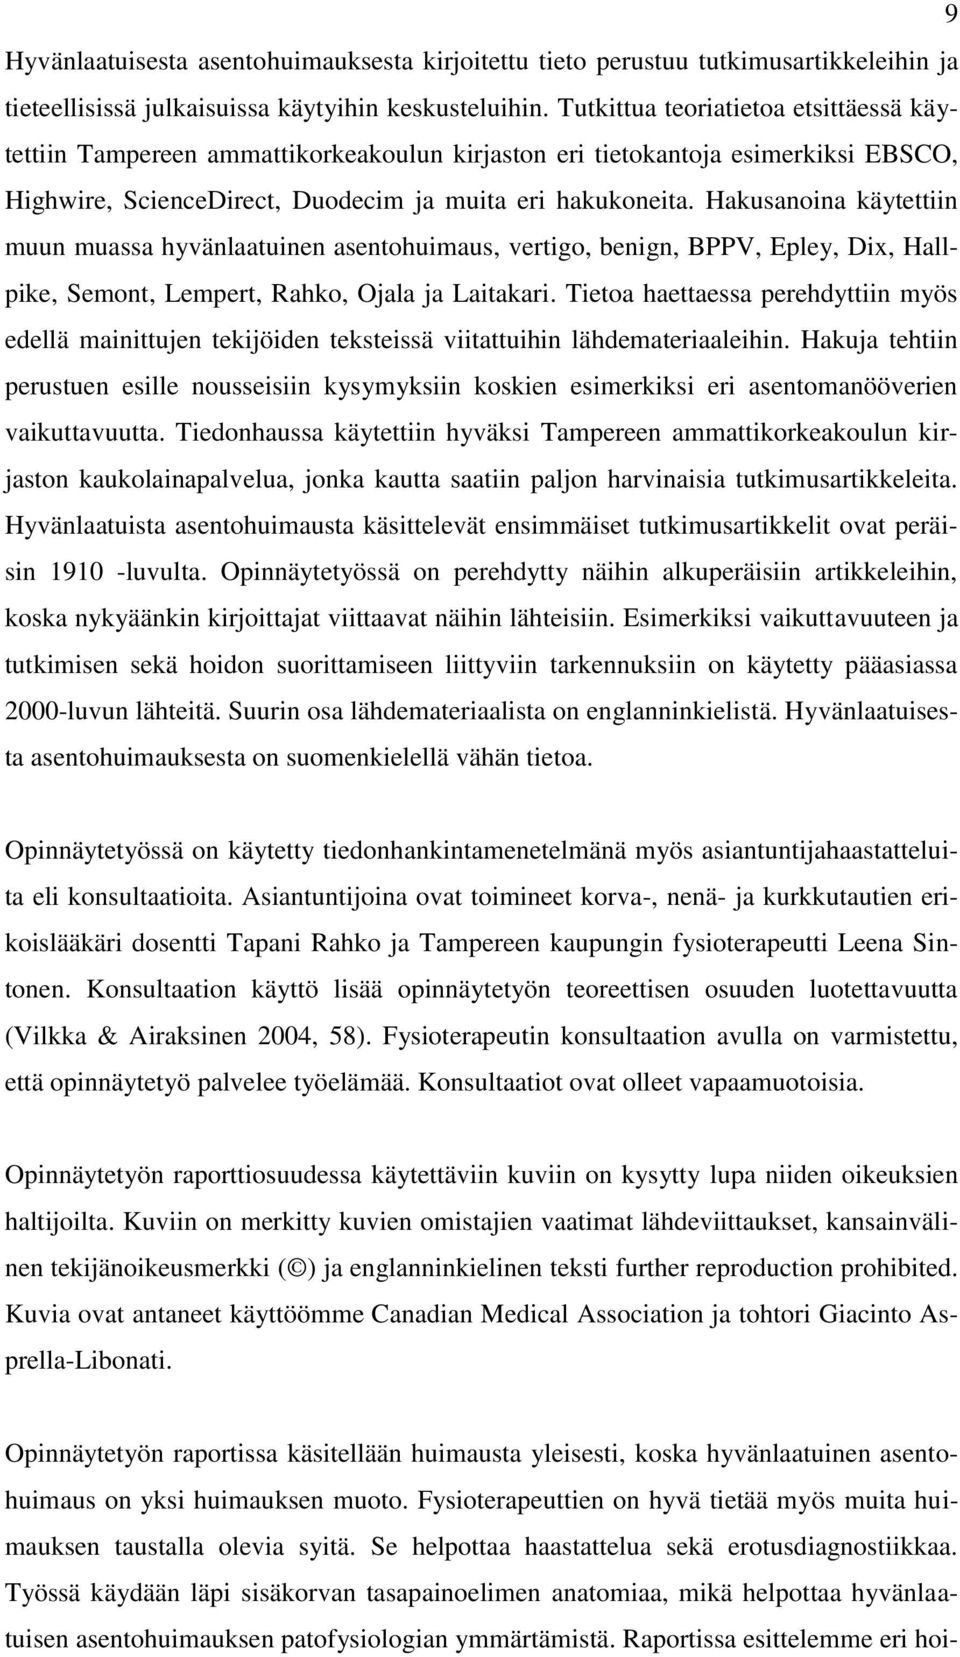 Hakusanoina käytettiin muun muassa hyvänlaatuinen asentohuimaus, vertigo, benign, BPPV, Epley, Dix, Hallpike, Semont, Lempert, Rahko, Ojala ja Laitakari.